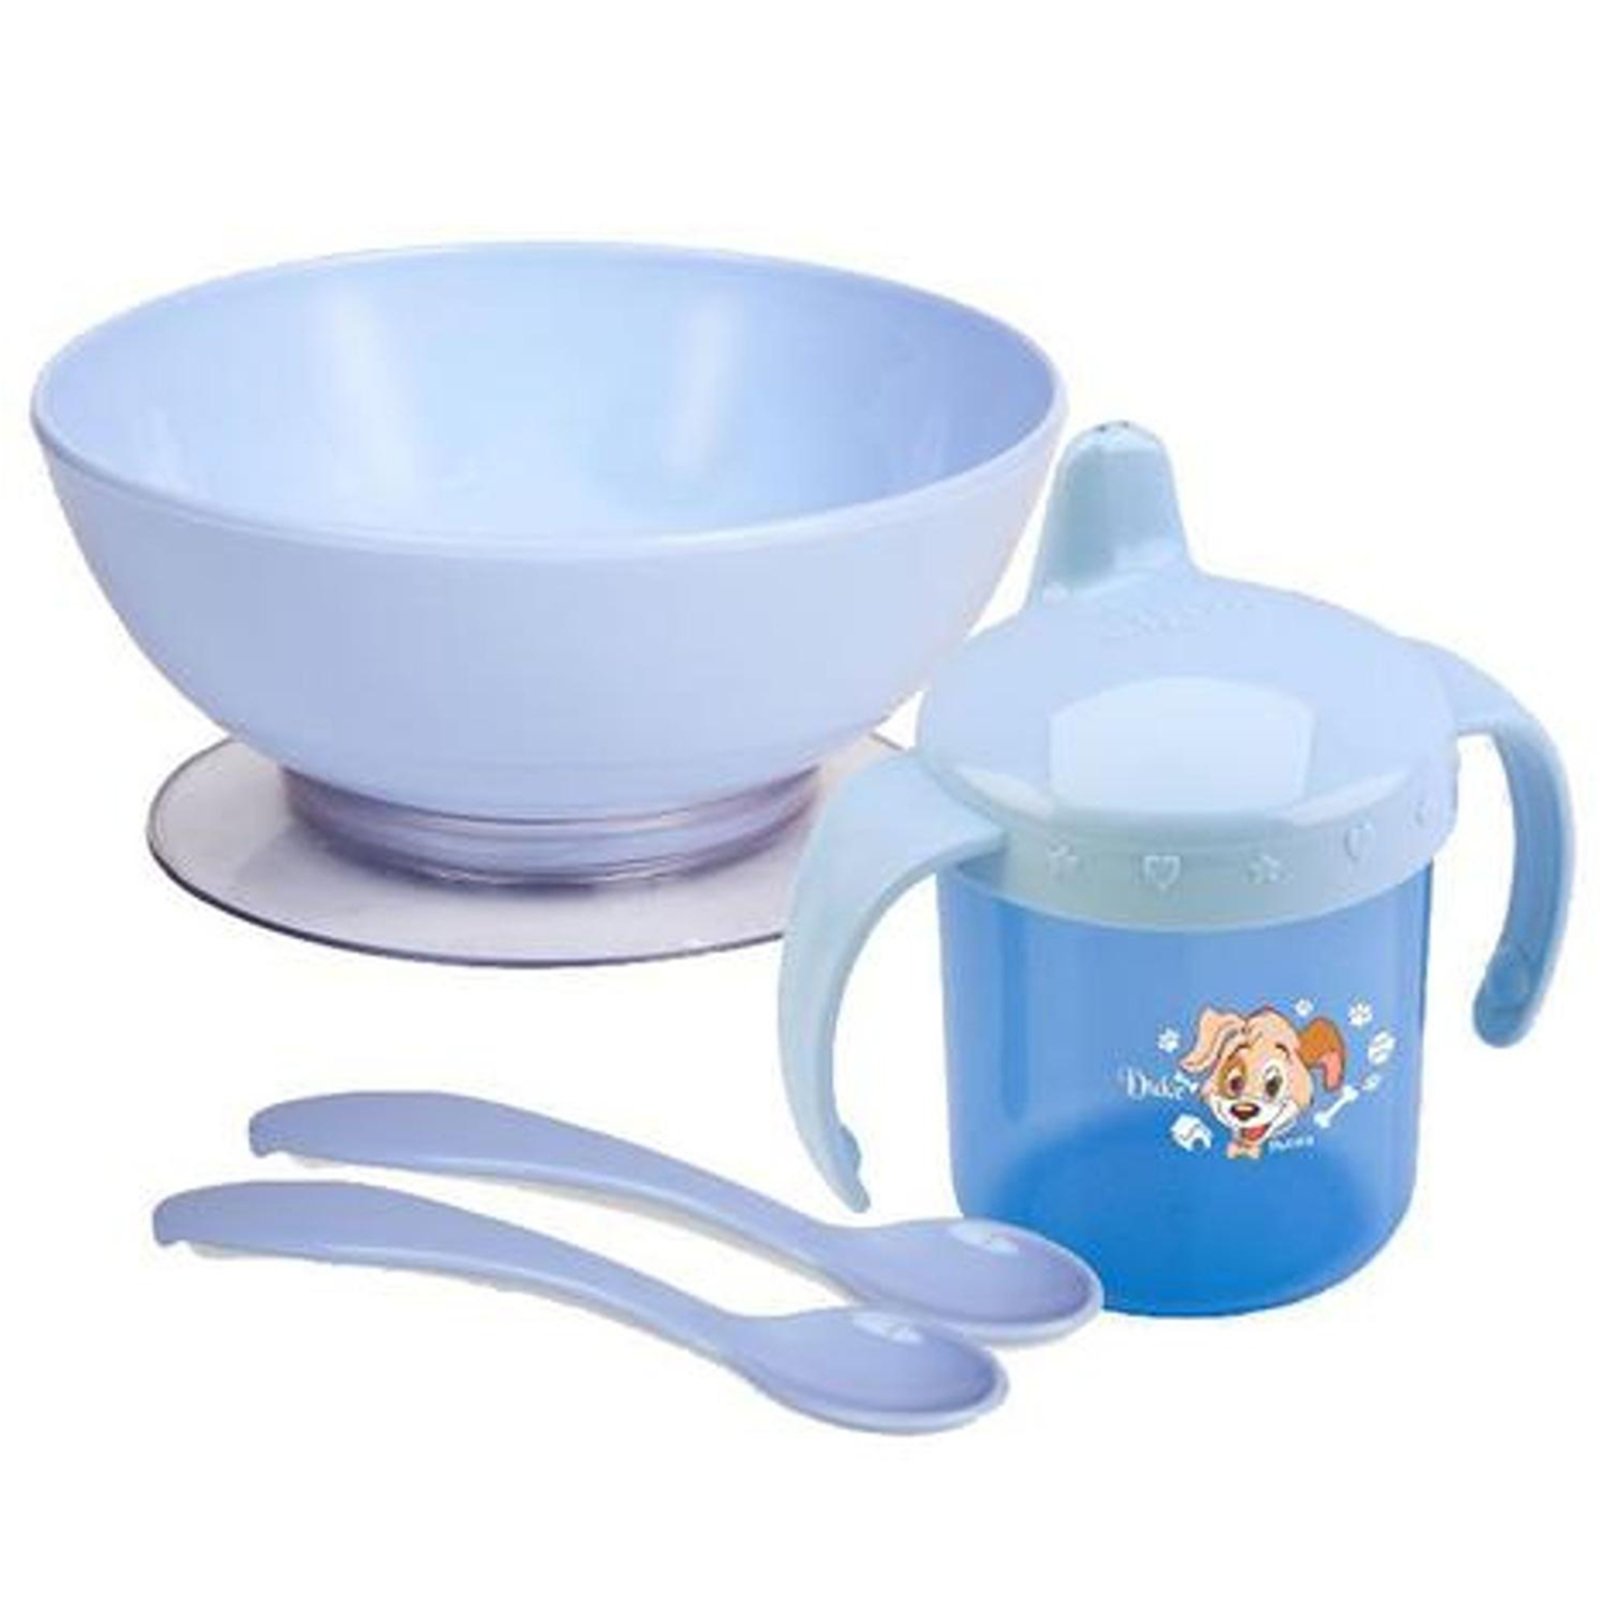 Infantil - Kit para Refeição Prato com Ventosa Colher e Caneca Azul